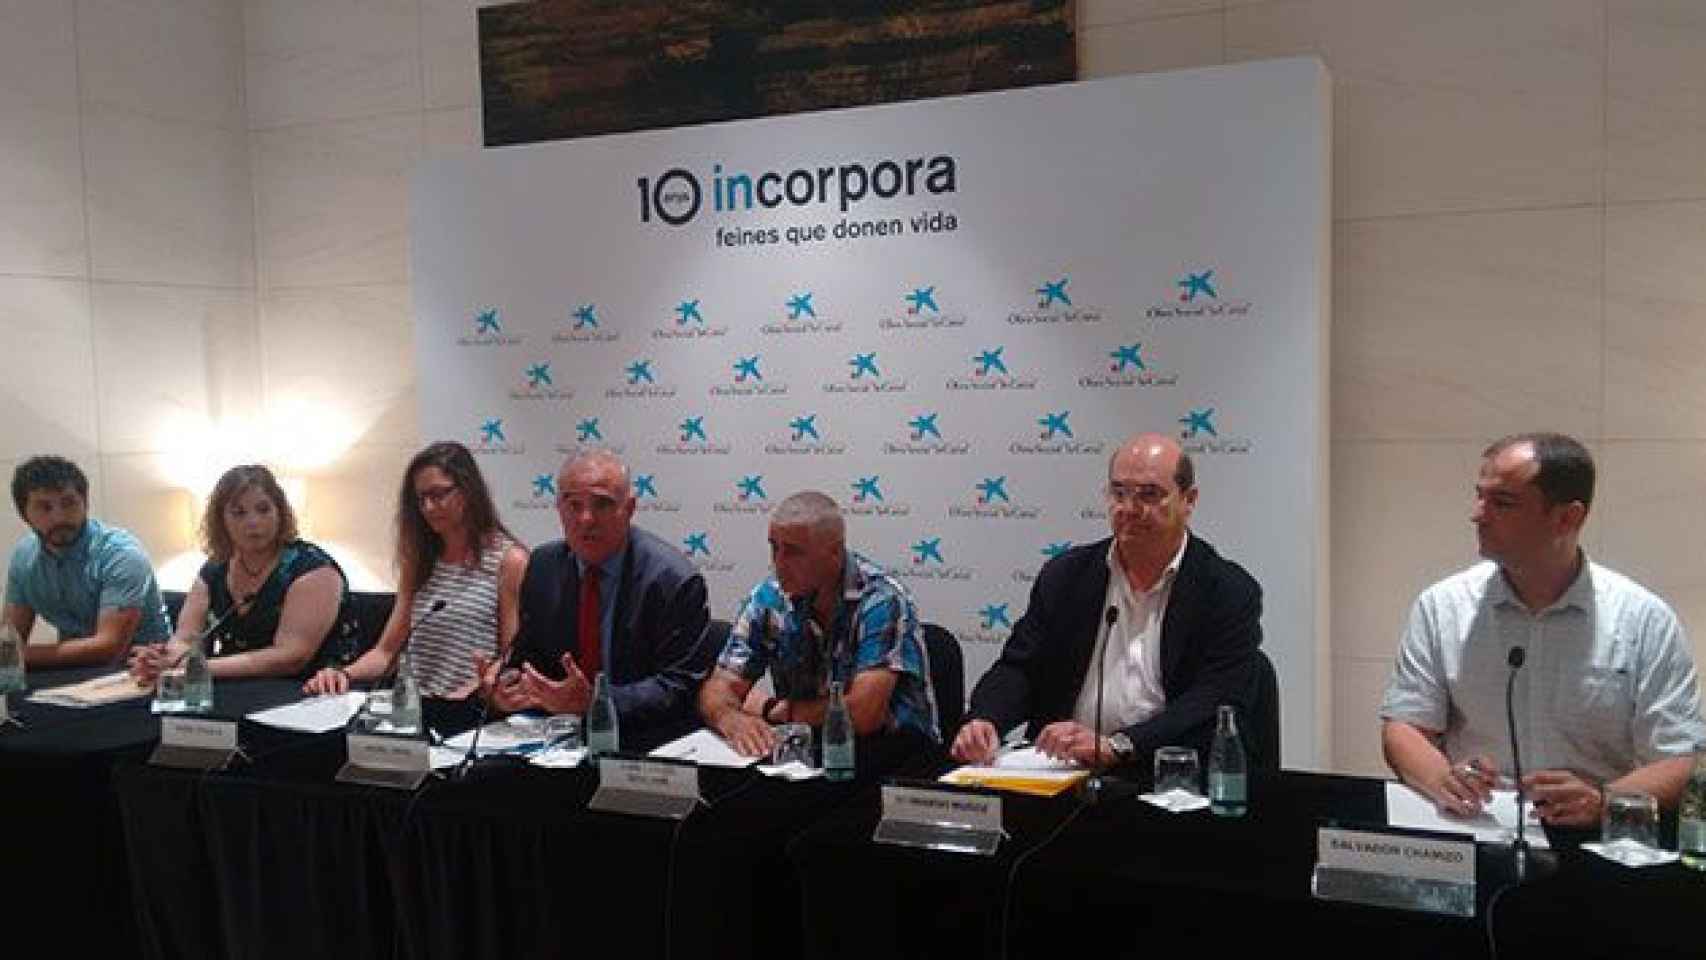 El responsable del programa 'Insorpora' de la Fundación La Caixa, Jaume Farré, hace balance del décimo aniversario de la iniciativa / CG